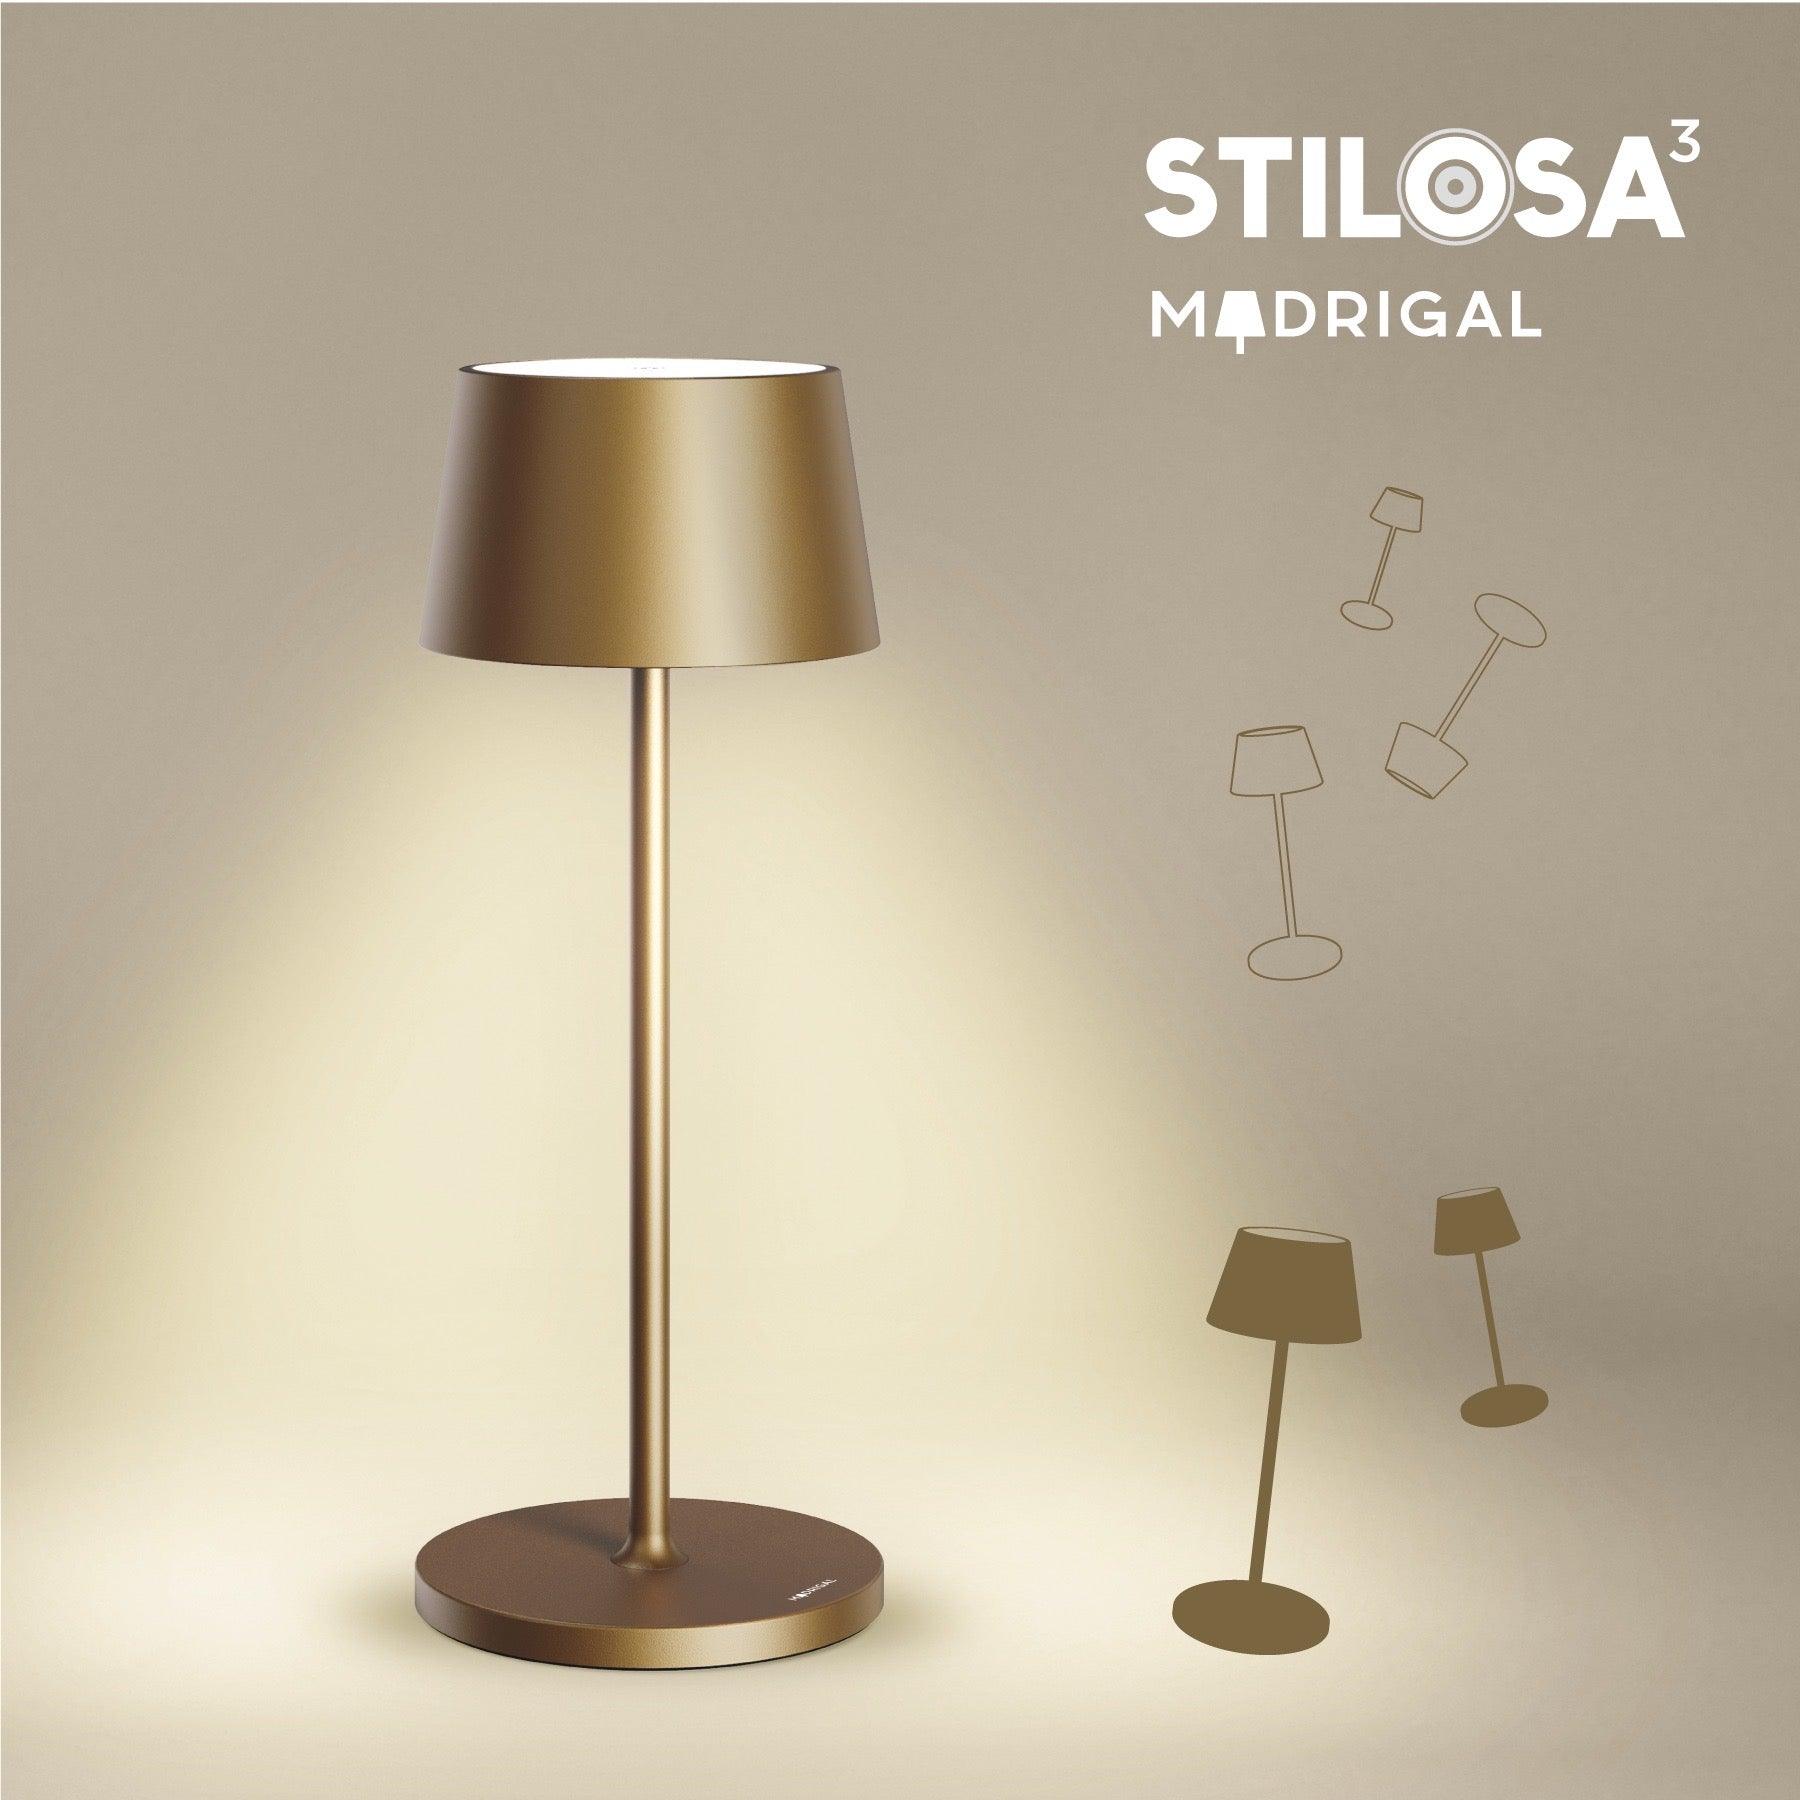 Stilosa Tonda - Gold Titanium - Madrigal